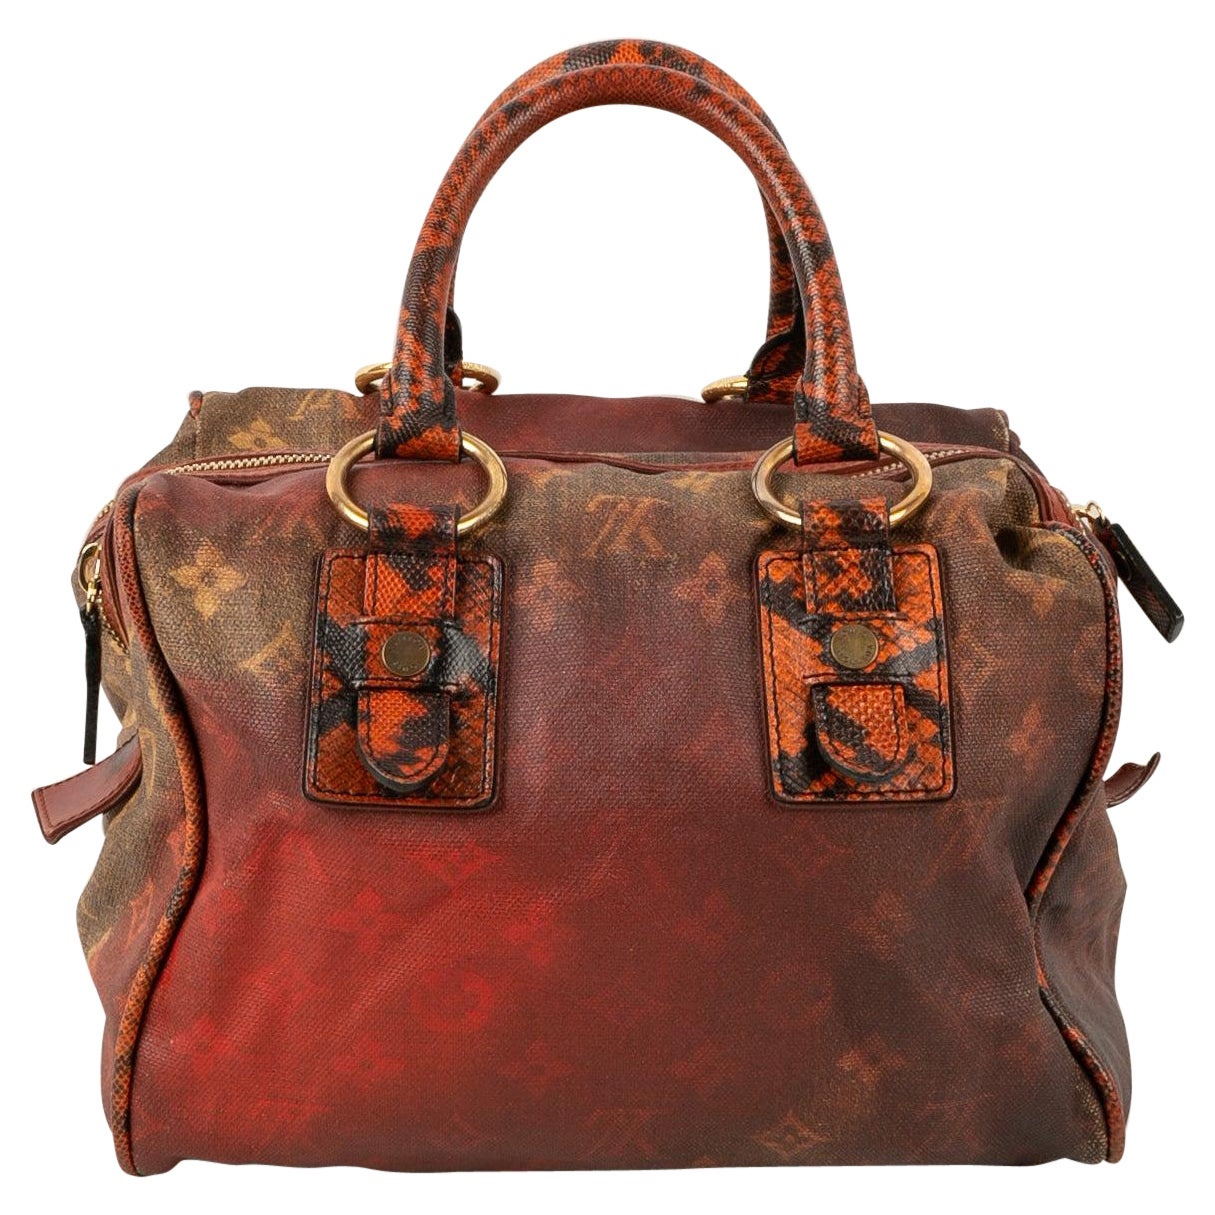 Louis Vuitton "Mancrazy" Bag by Richard Prince